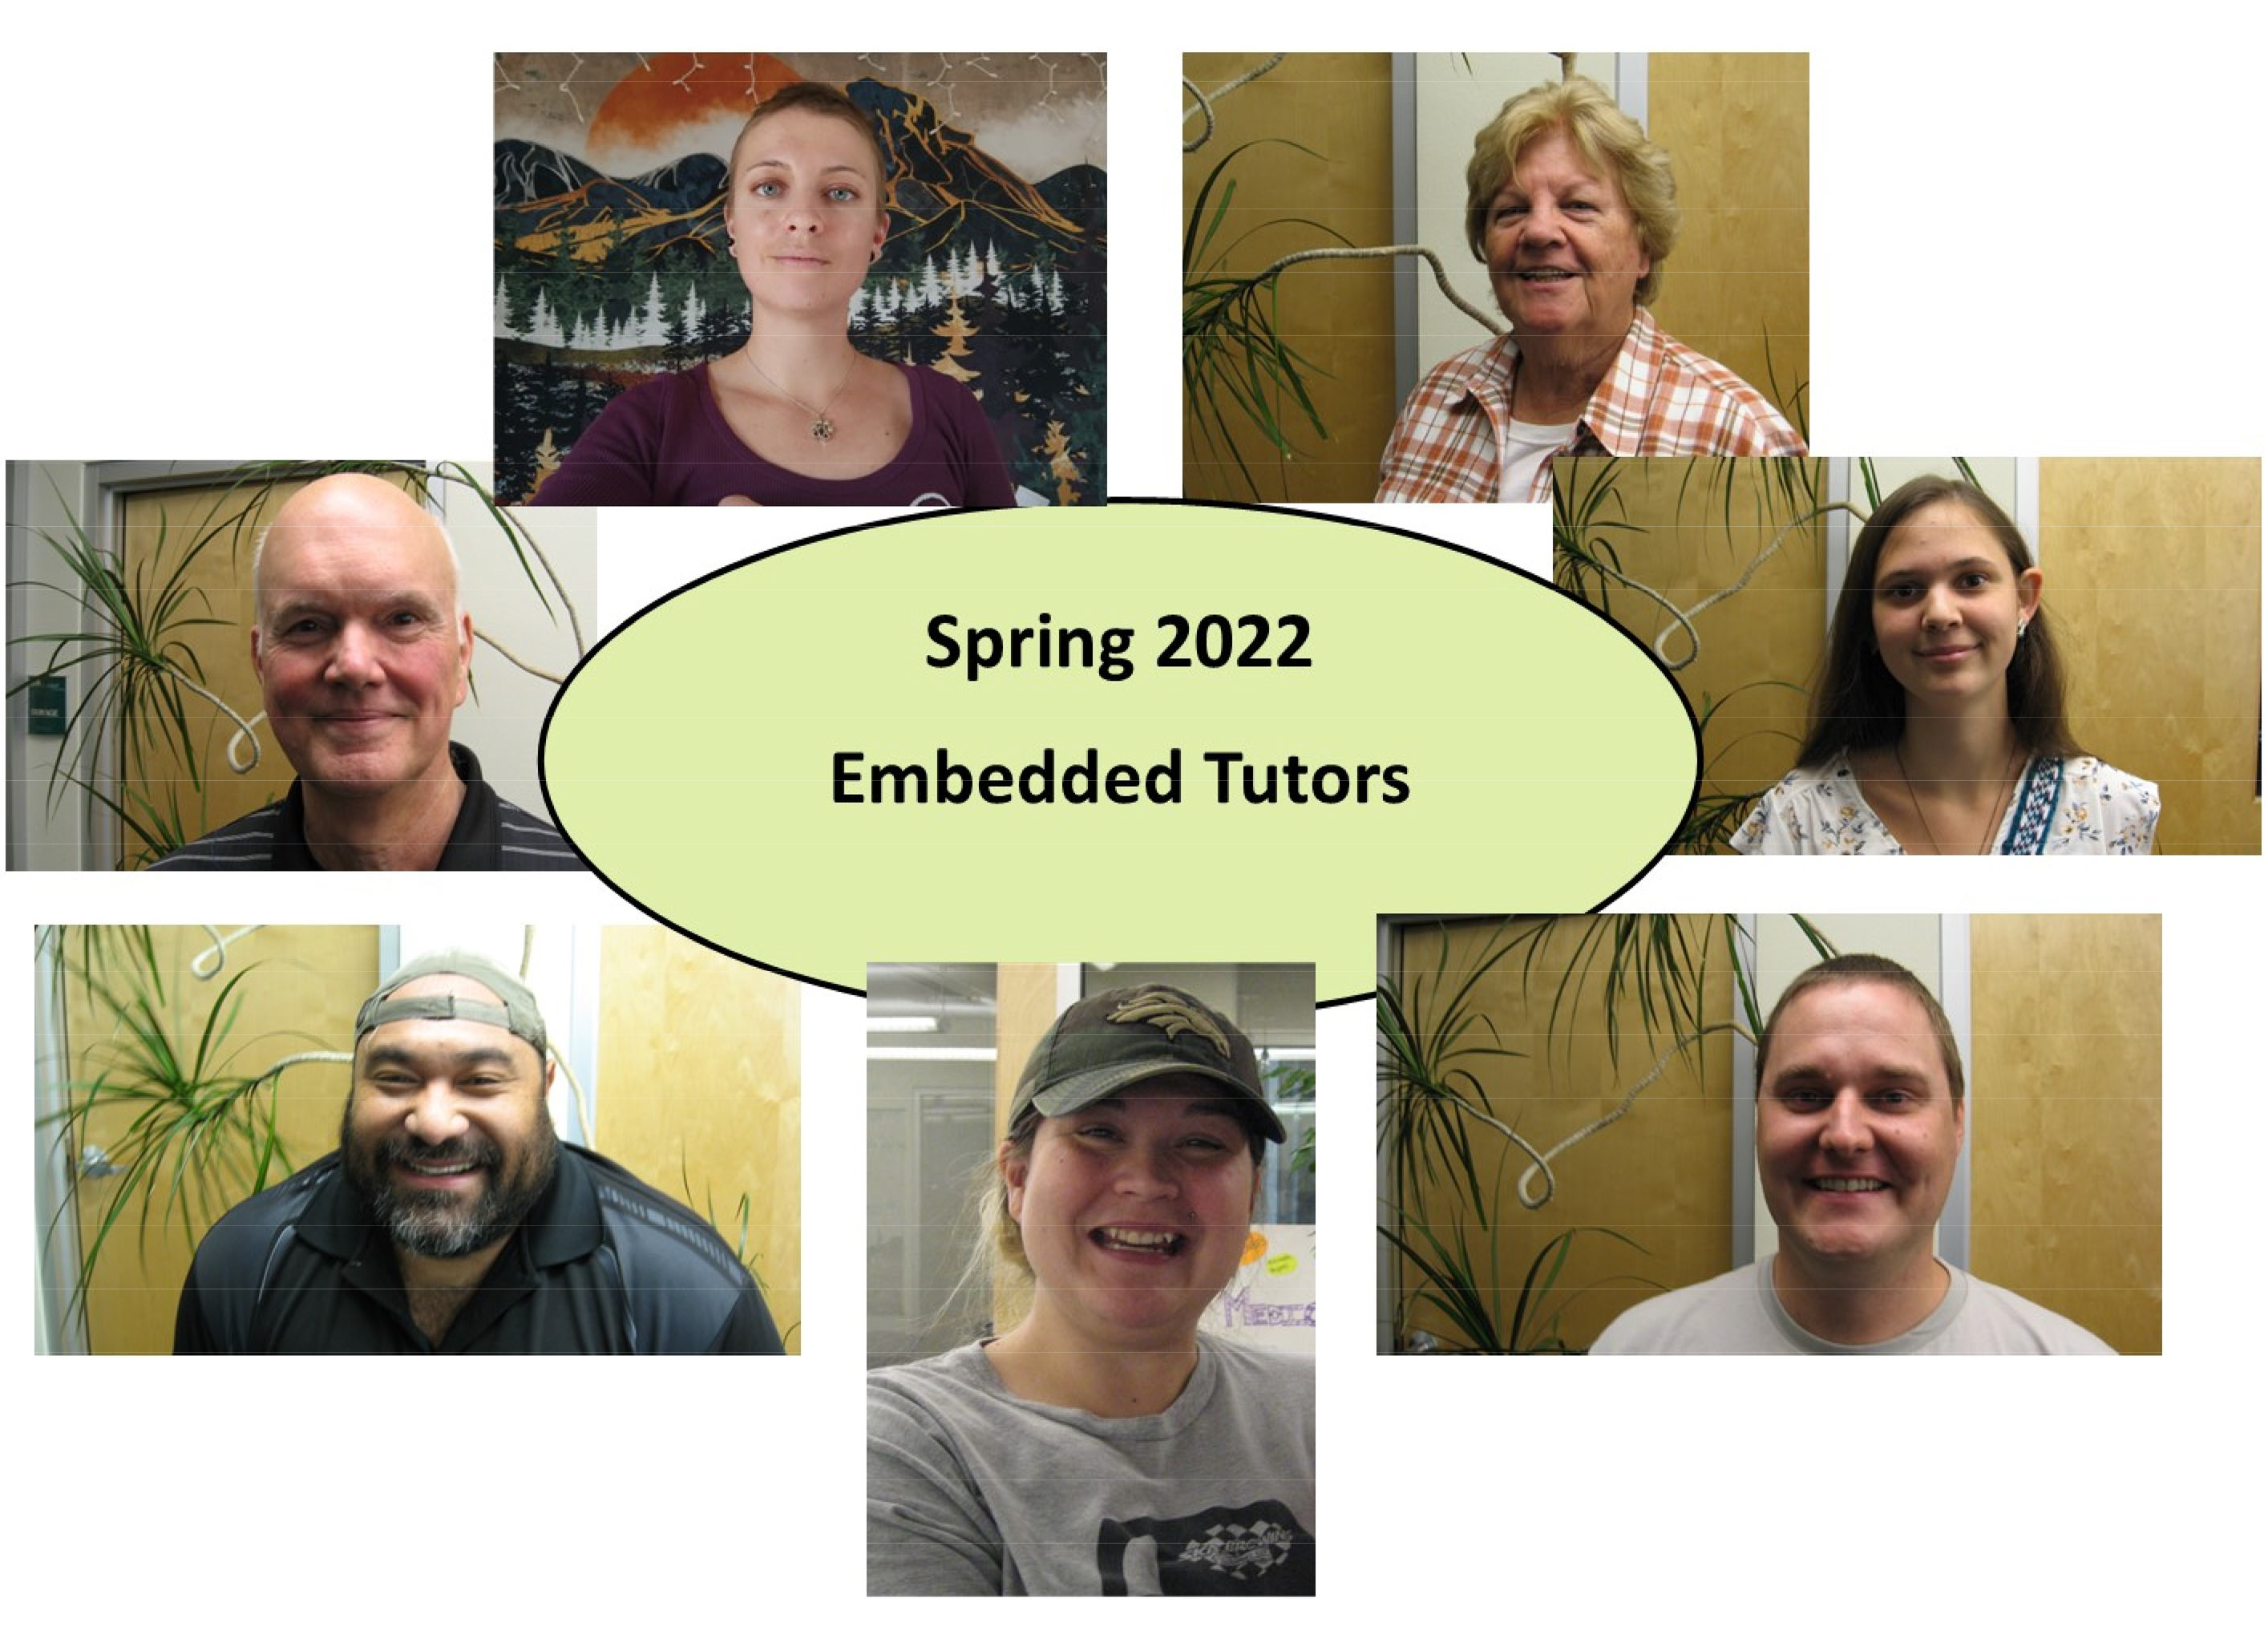 Embedded tutors image